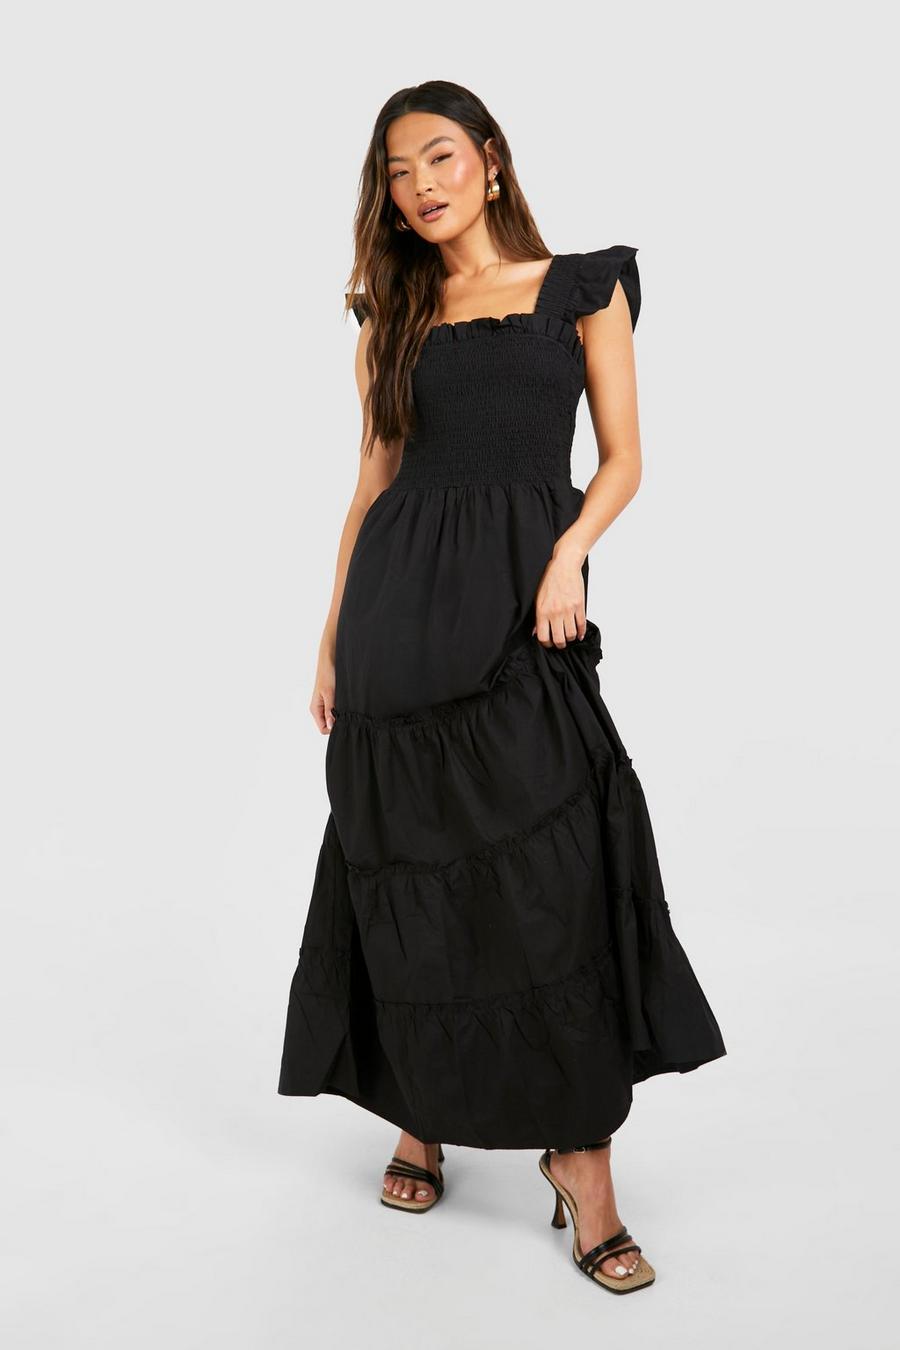 Plain Black Long Dresses